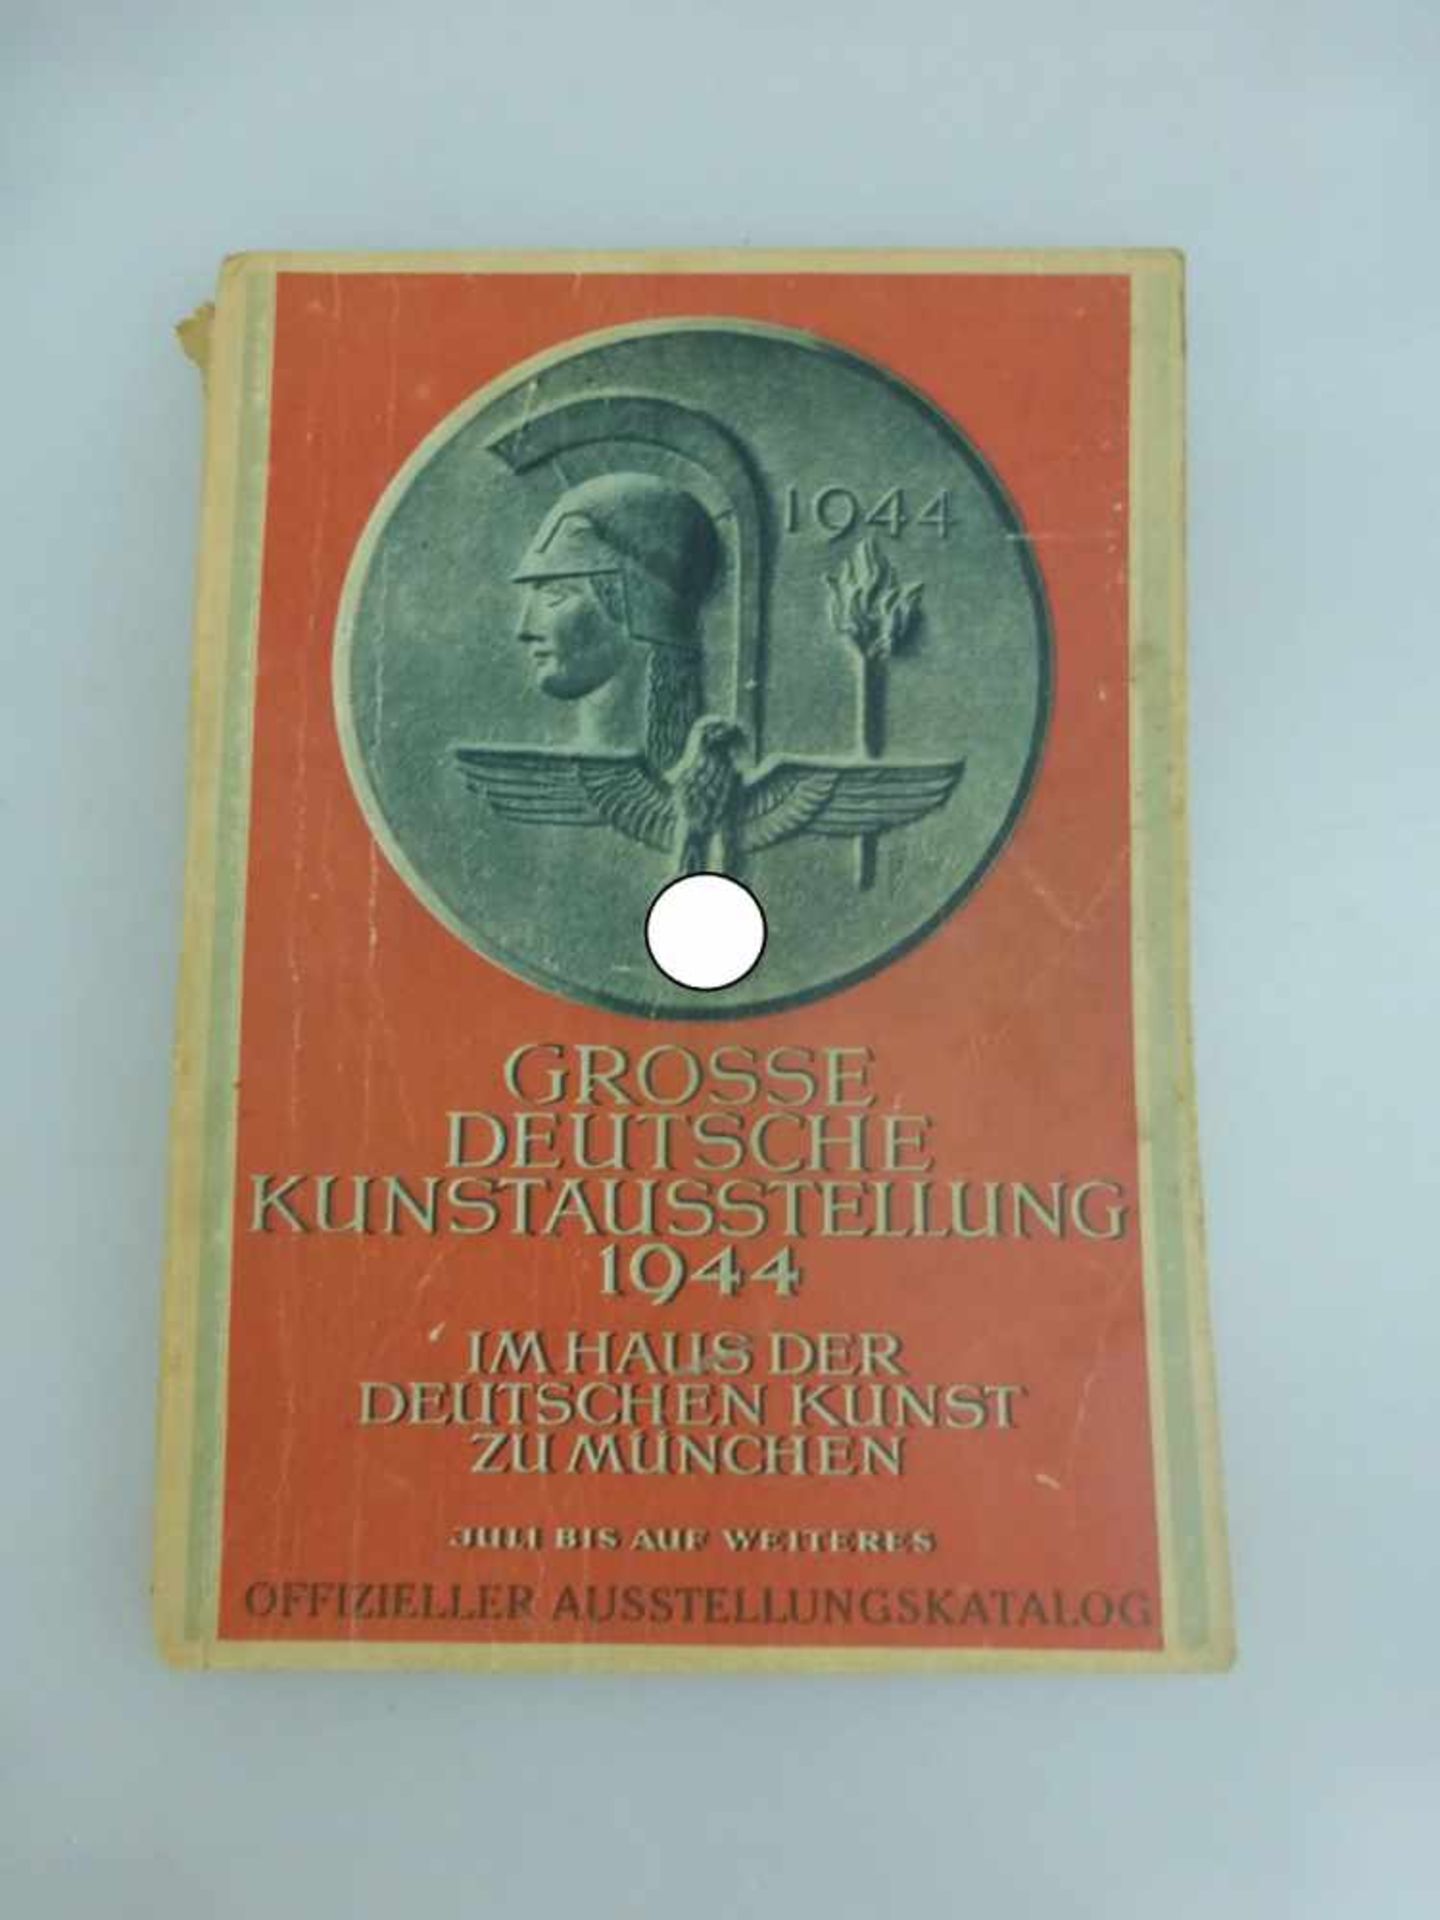 Katalog zur Großen Deutschen Kunstausstellung in München 1944, Einband besch.